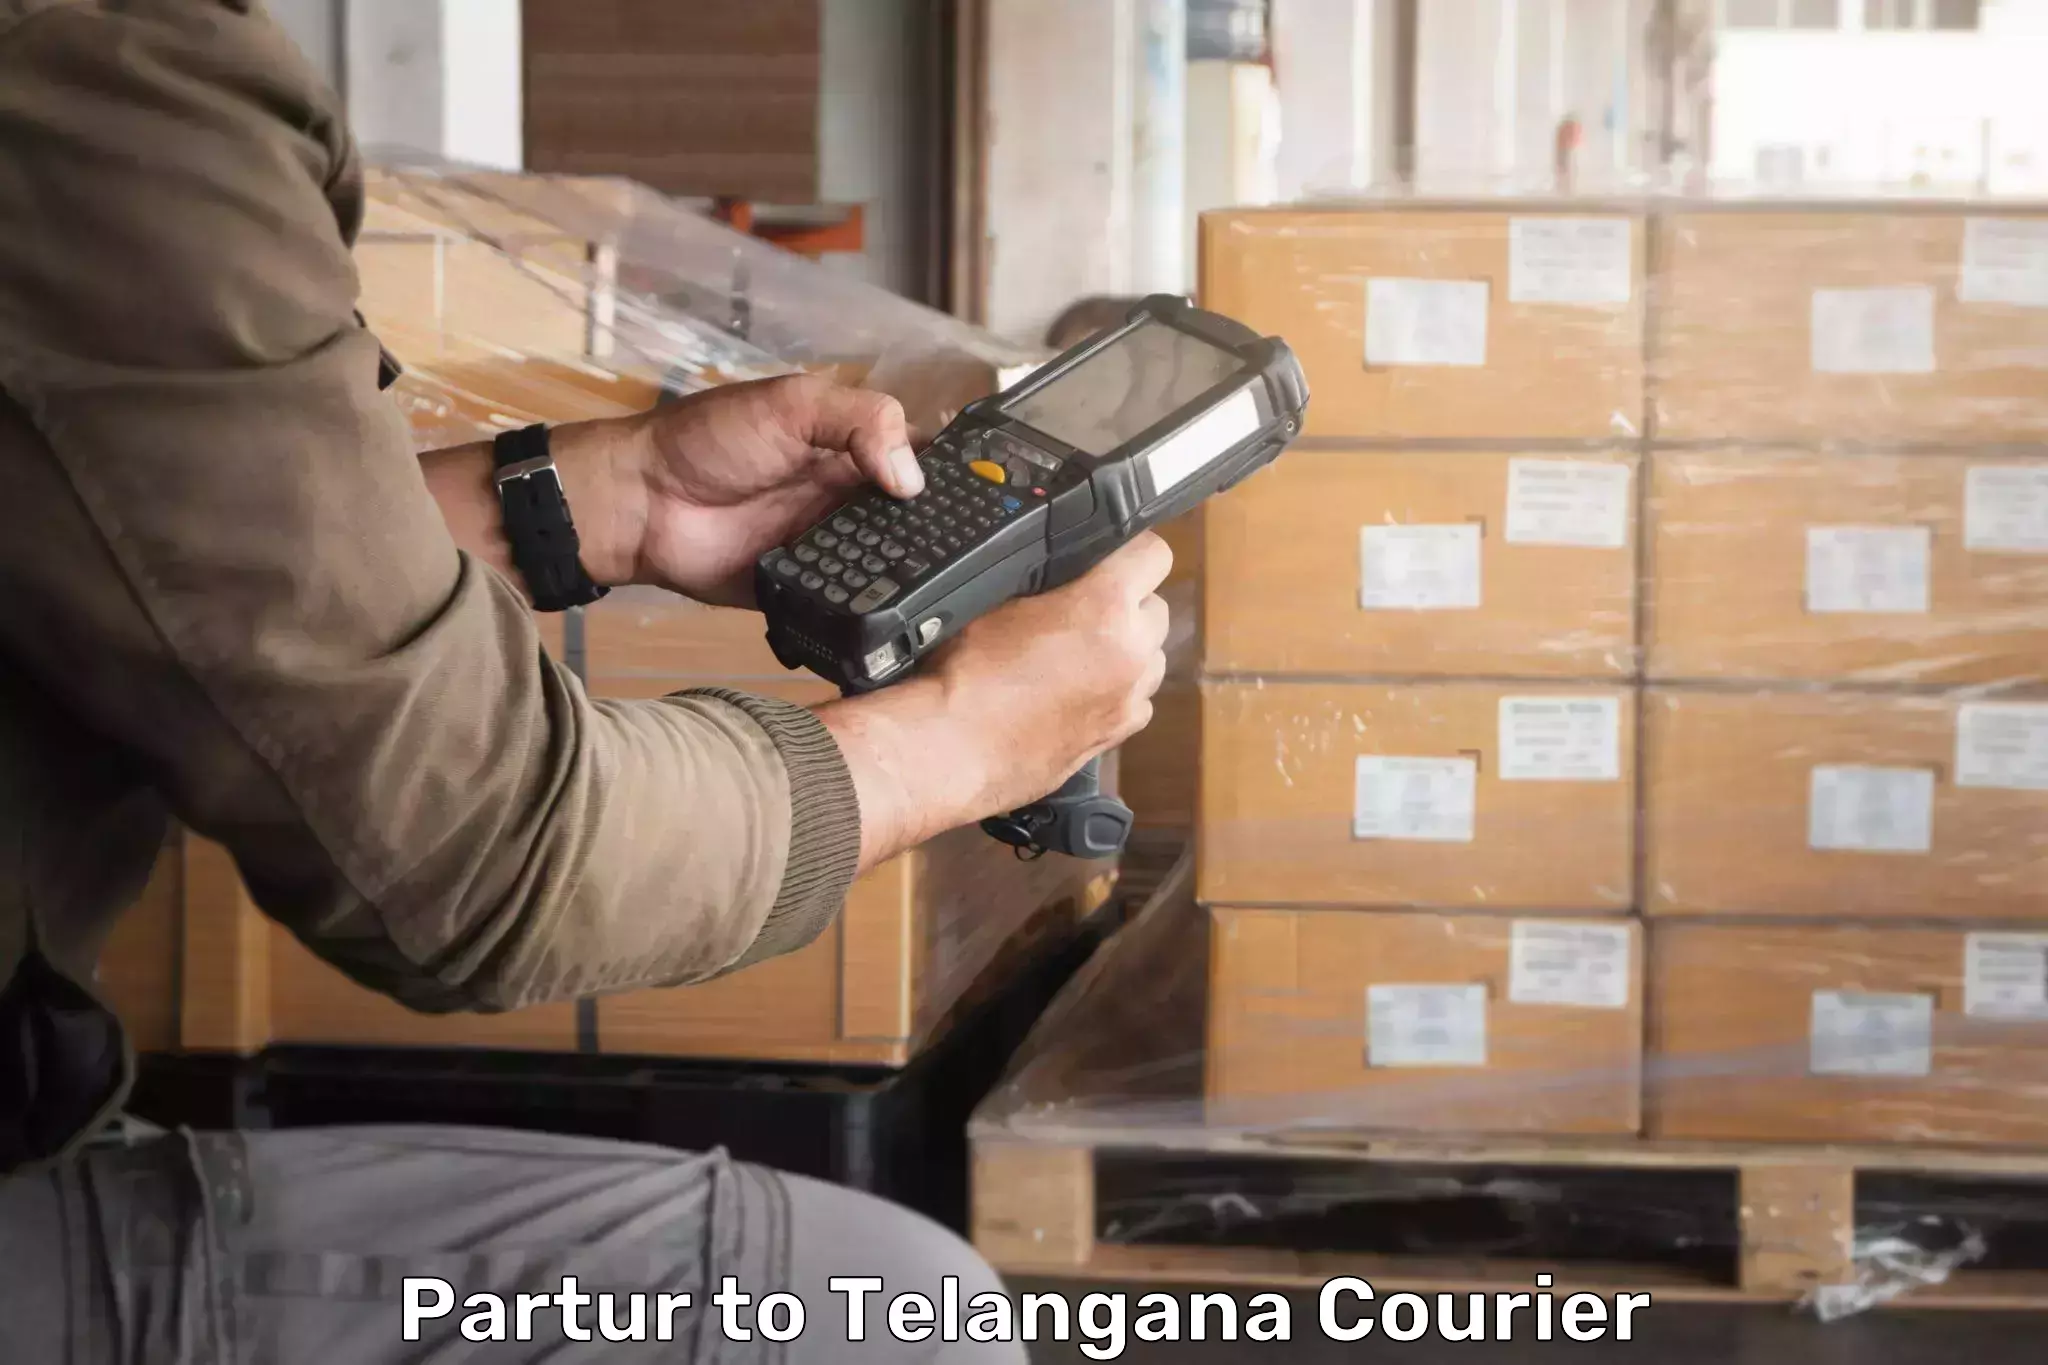 Parcel service for businesses Partur to Netrang